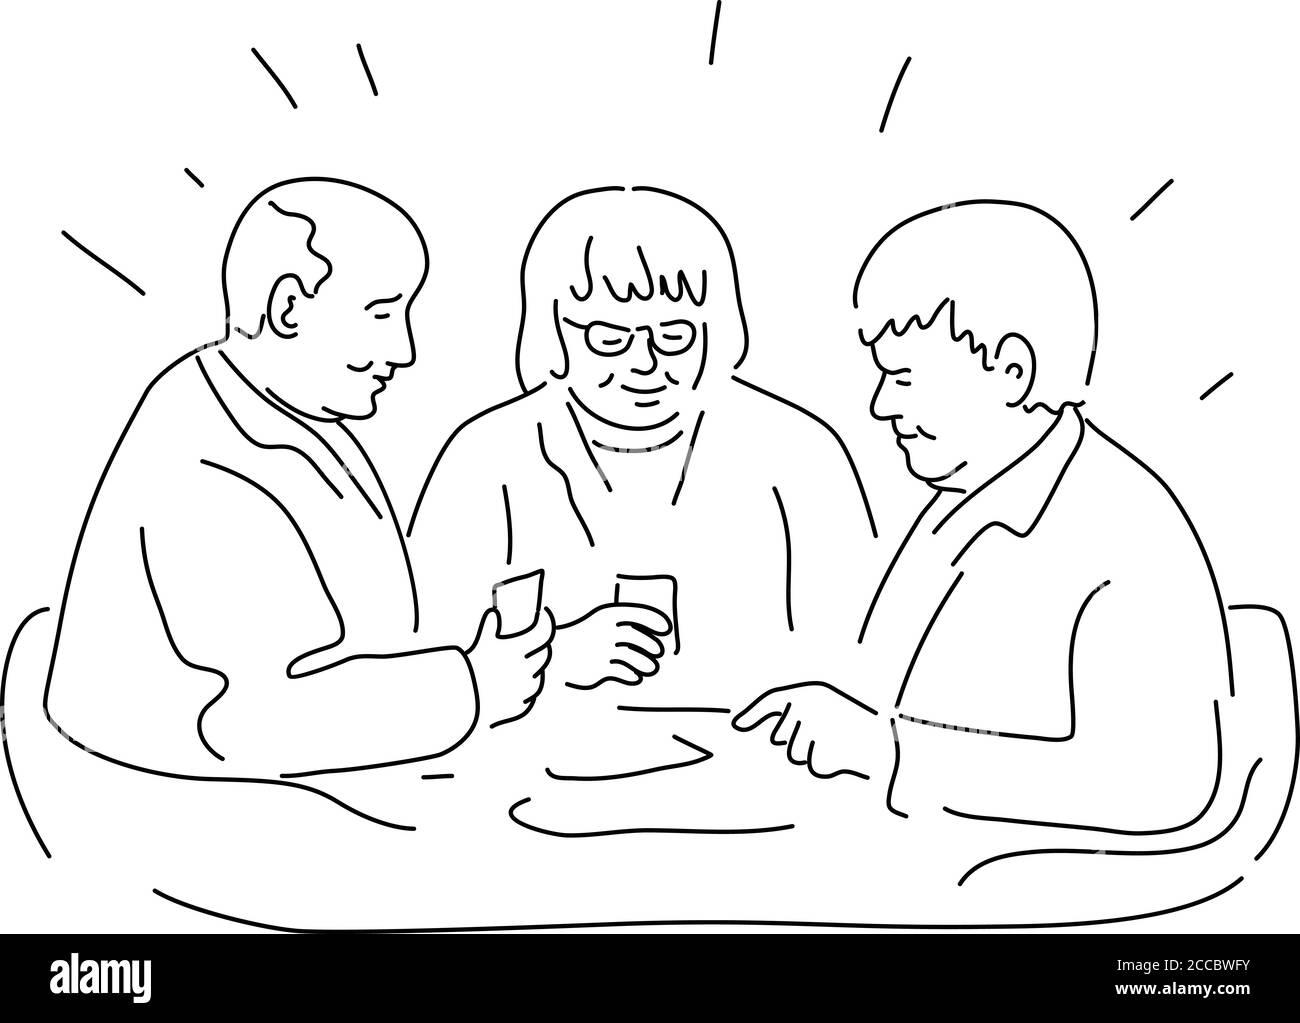 Illustrazione monolinea di un gruppo di anziani o anziani i pazienti in casa di riposo o struttura residenziale giocando carte fatto in bianco e nero monoline st Illustrazione Vettoriale